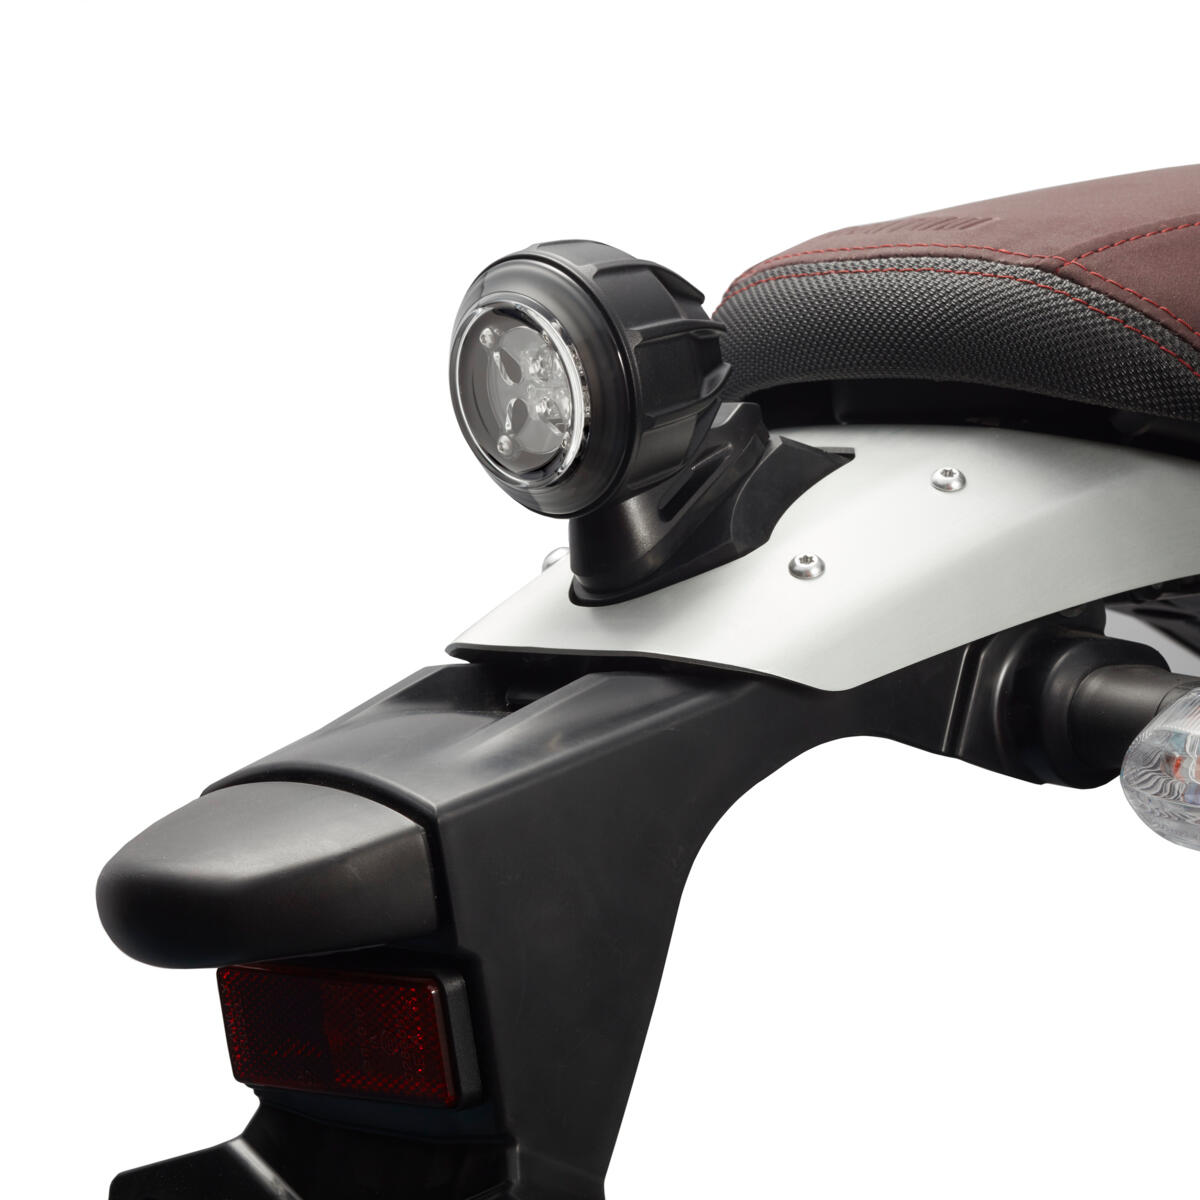 Modern LED-achterlicht om uw motorfiets een vleugje modern design te geven in combinatie met een authentieke uitstraling.